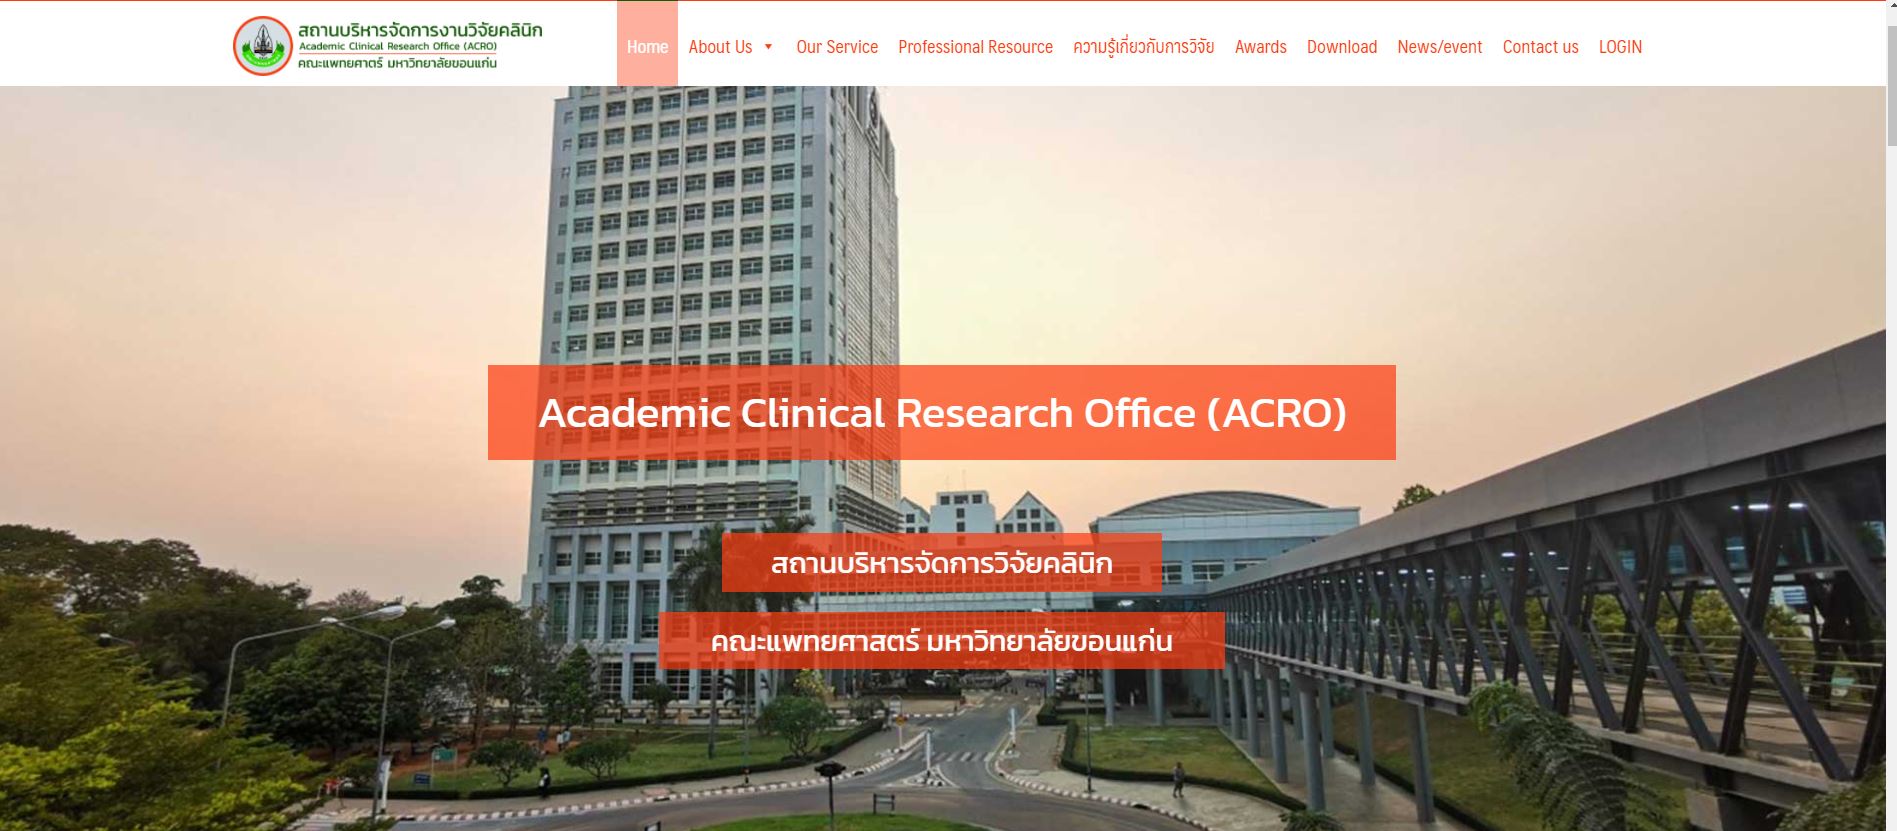 สถานบริหารจัดการงานวิจัยคลินิก (ACRO) คณะแพทยศาสตร์ มหาวิทยาลัยขอนแก่น